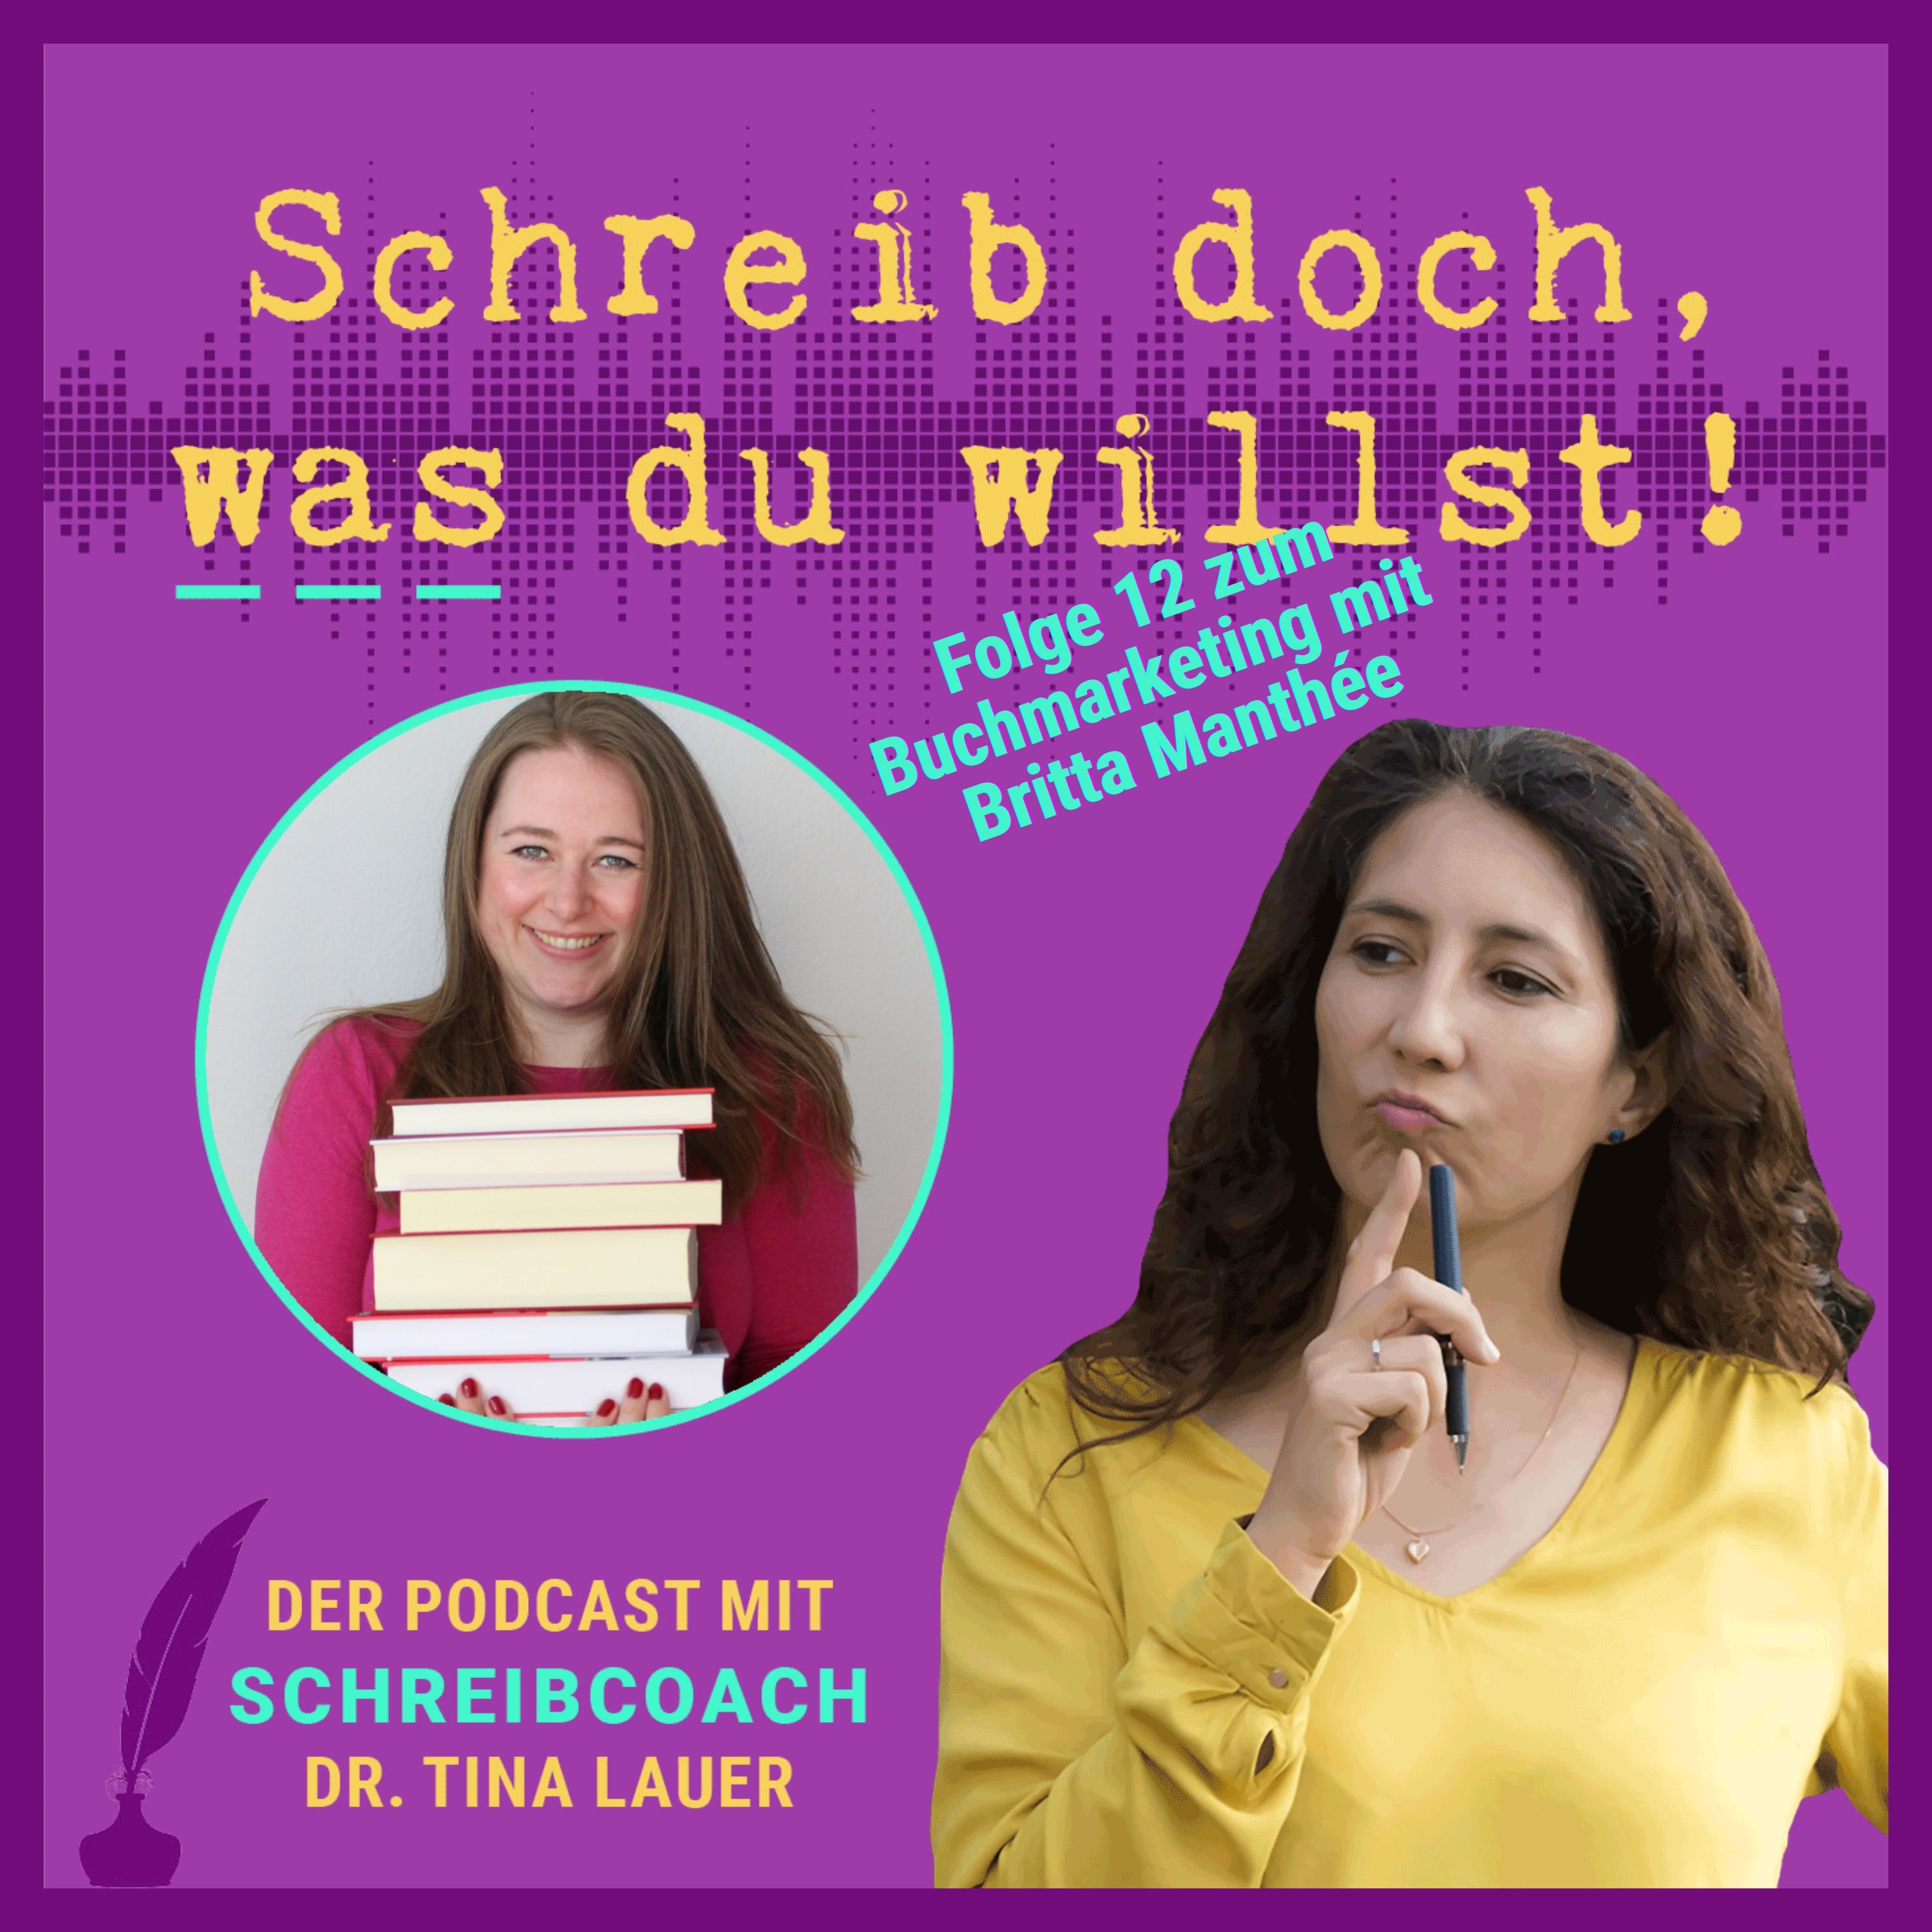 Podcast Folge 12 zum Buchmarketing mit Britta Manthée. Darauf zu sehen sind Britta Manthée und Dr. Tina Lauer. Darüber steht: Schreib doch, was du willst-Podcast